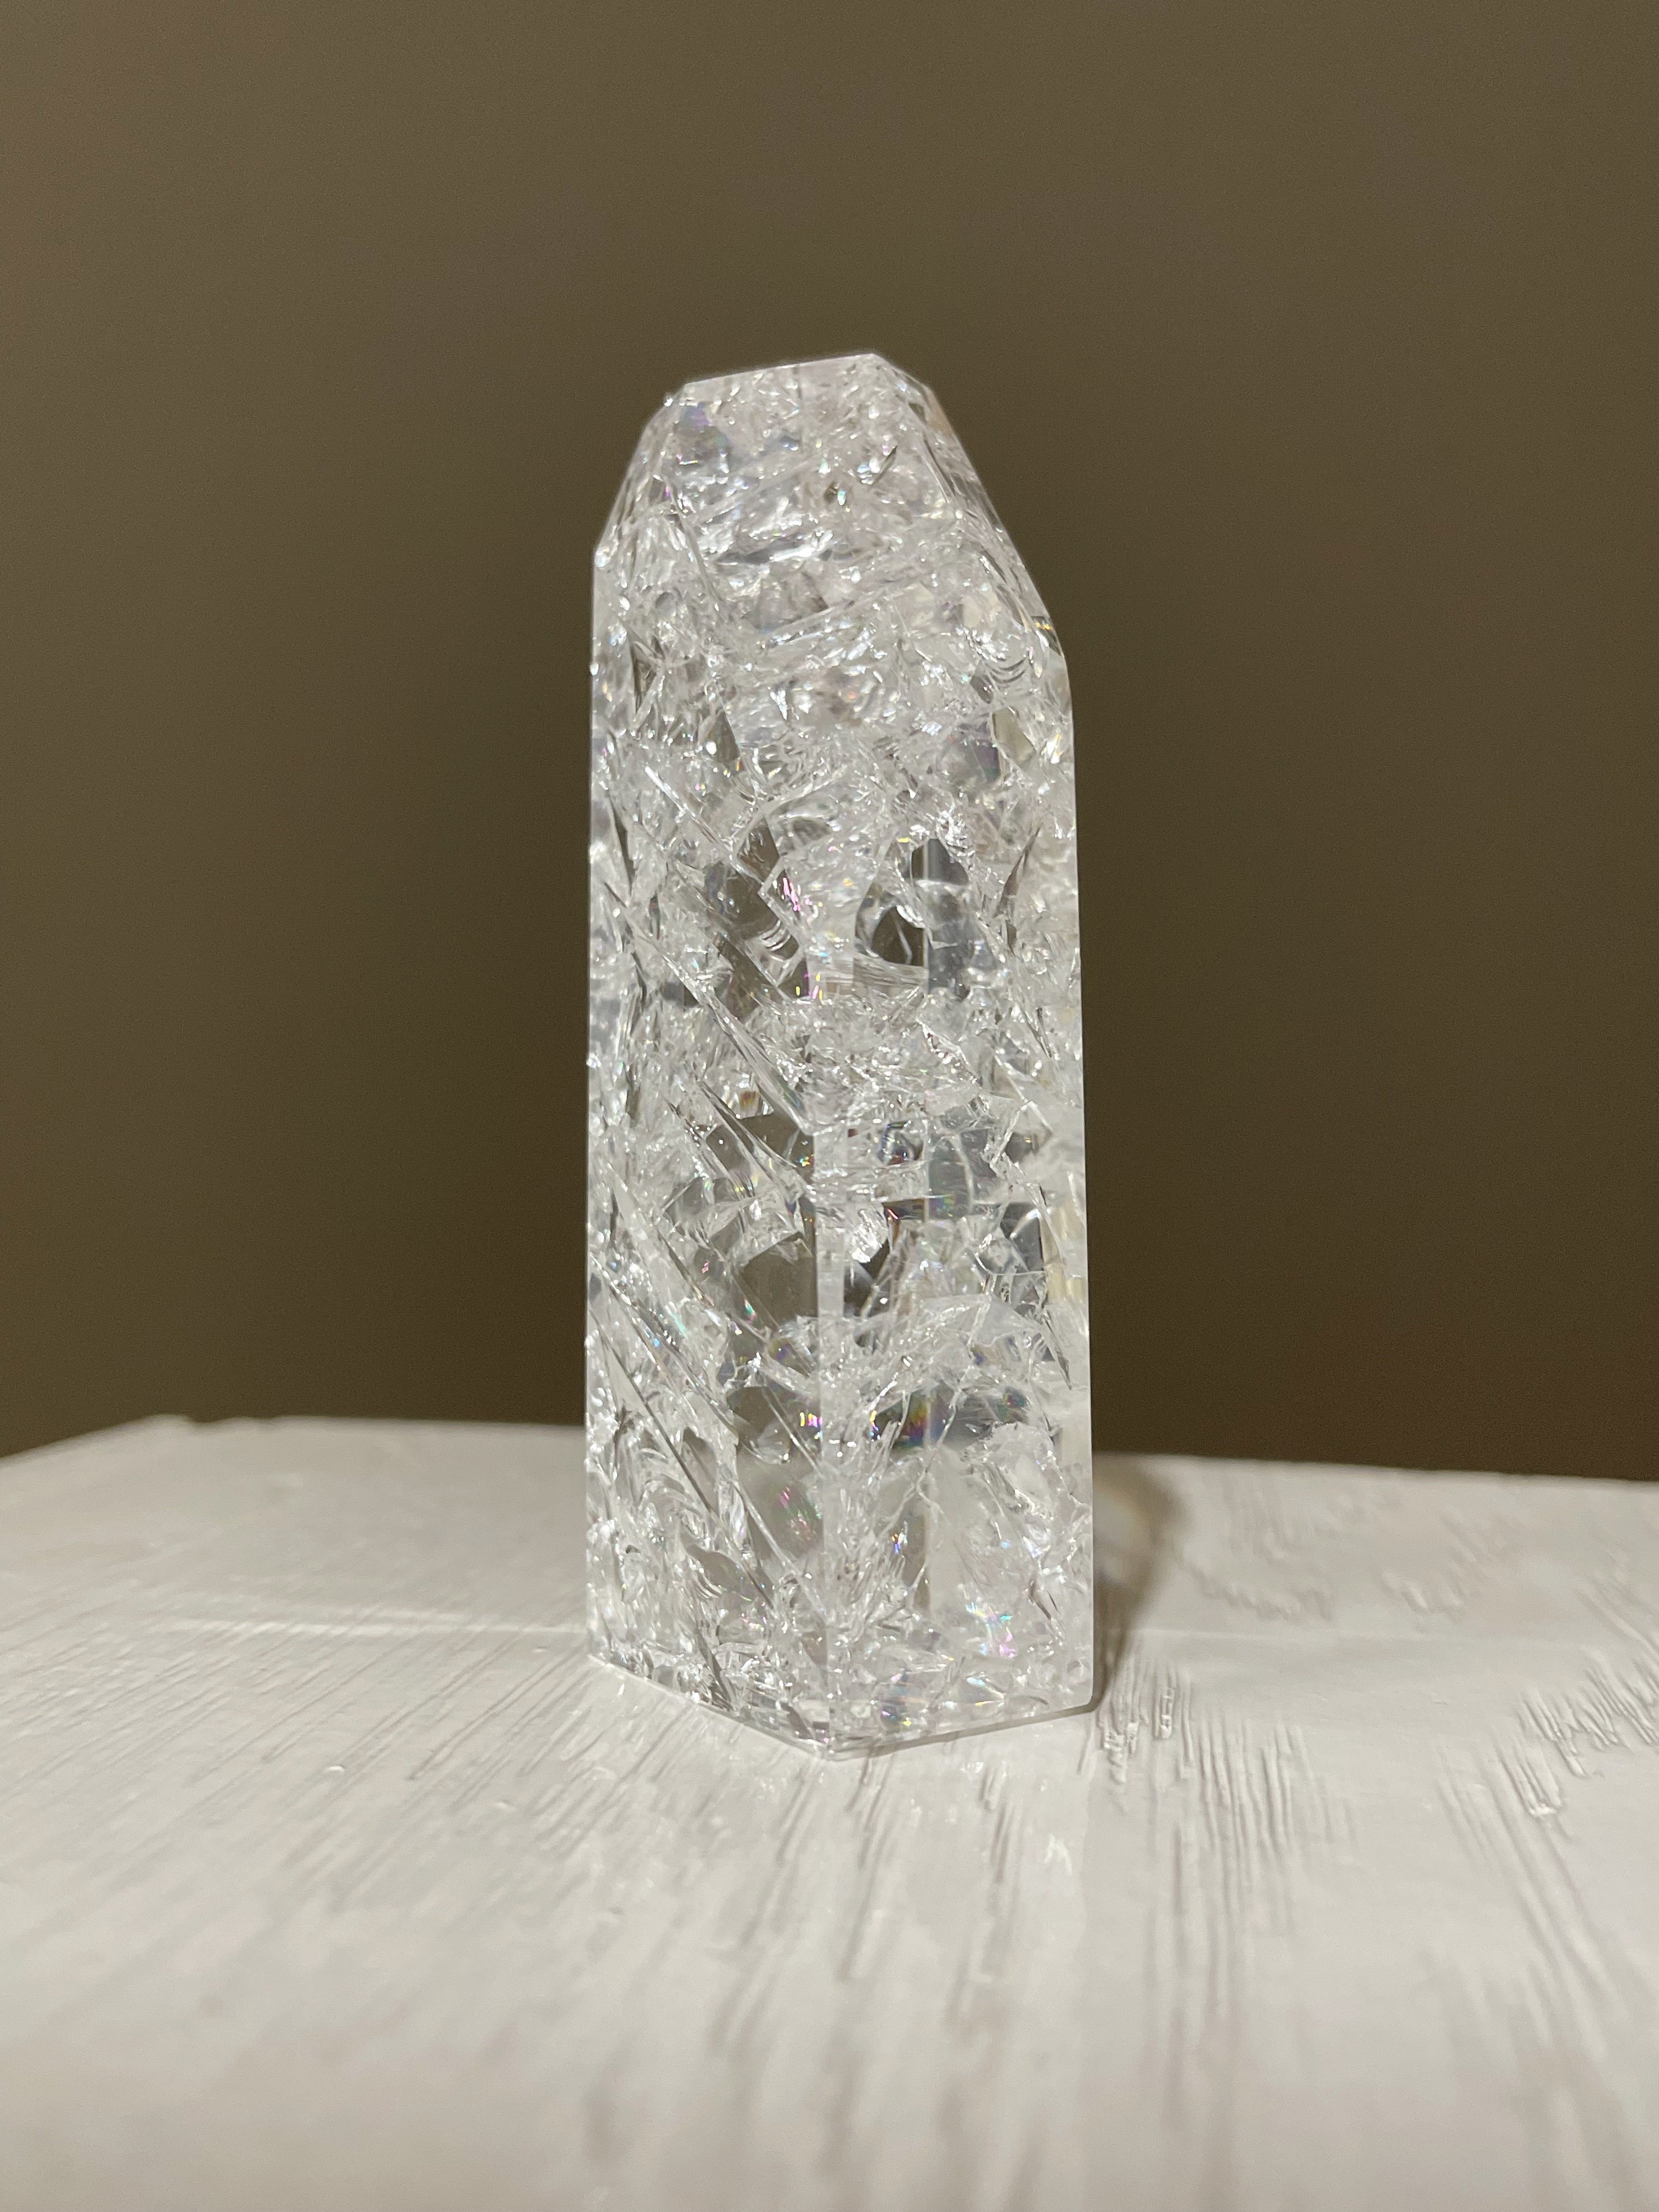 bergkristal verhit en afgekoeld